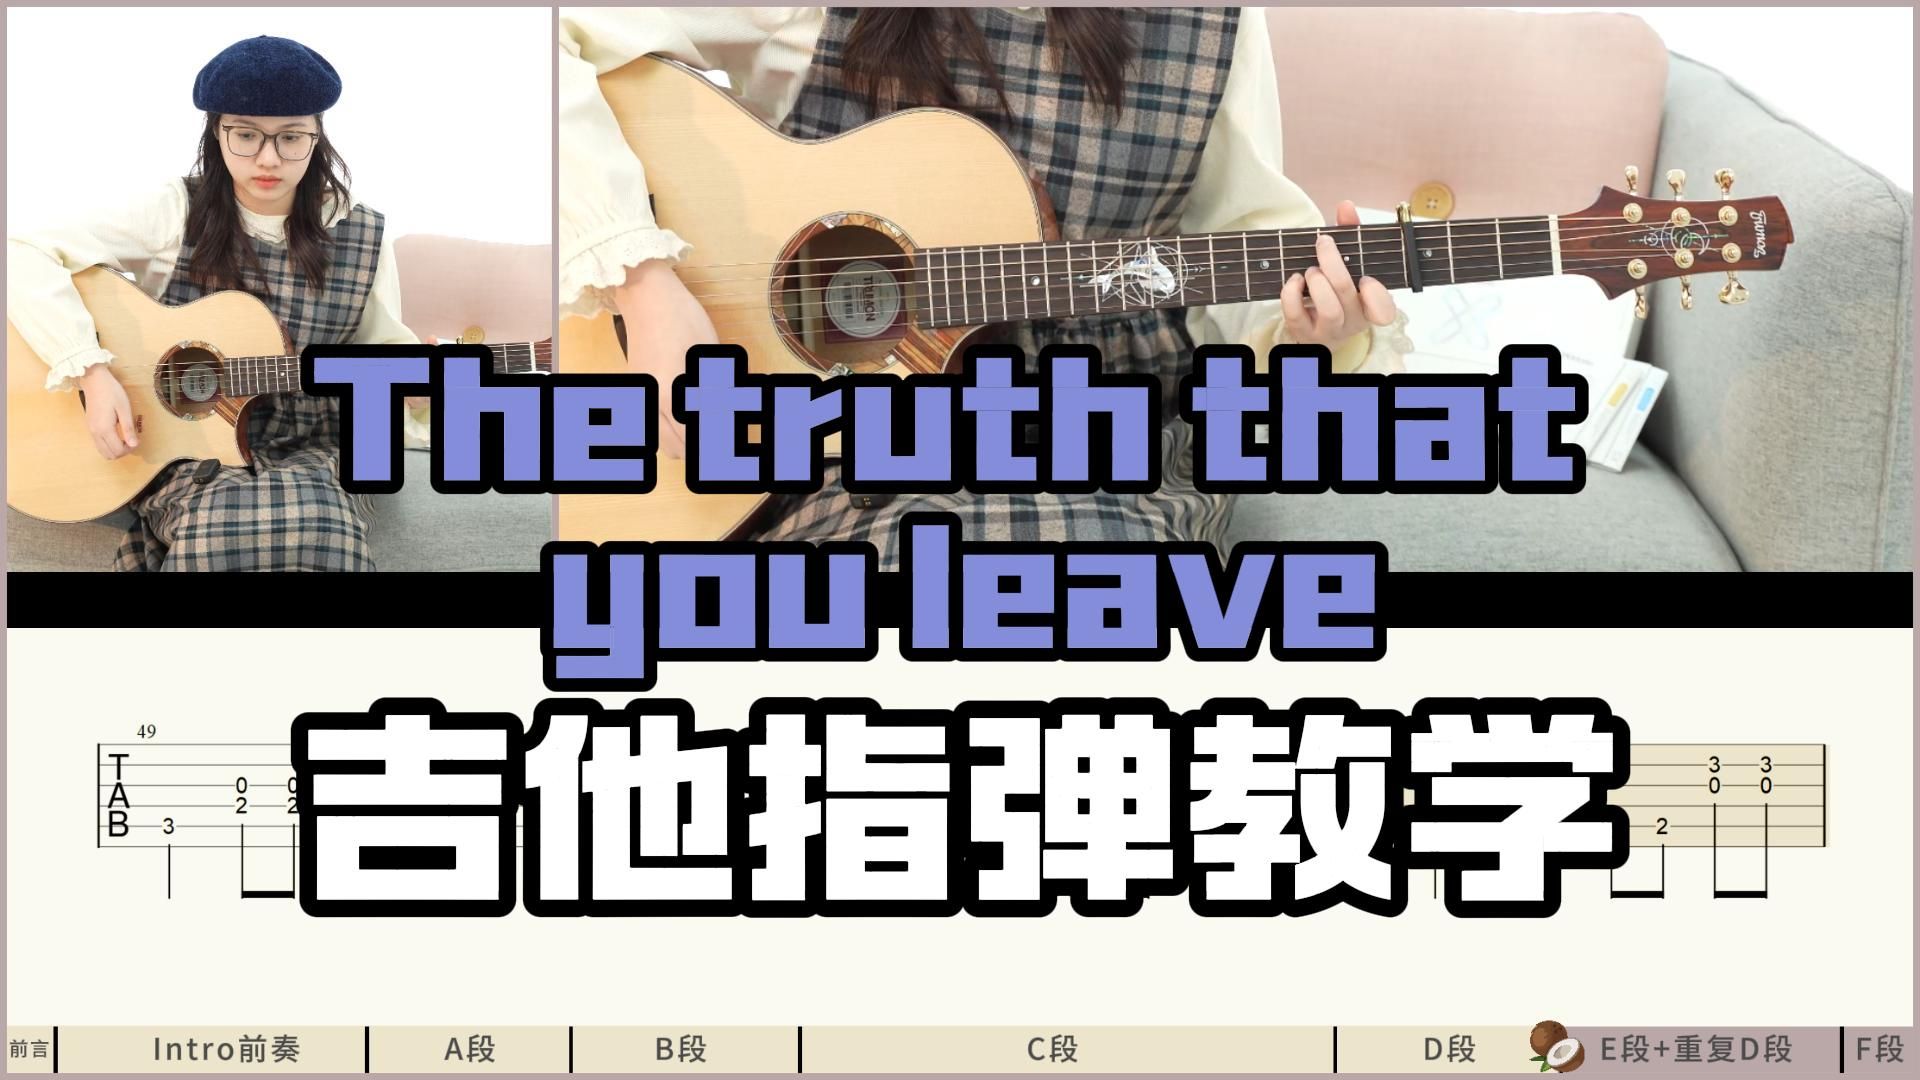 【指弹教学】《The truth that you leave》高至豪-吉他指弹教学教程